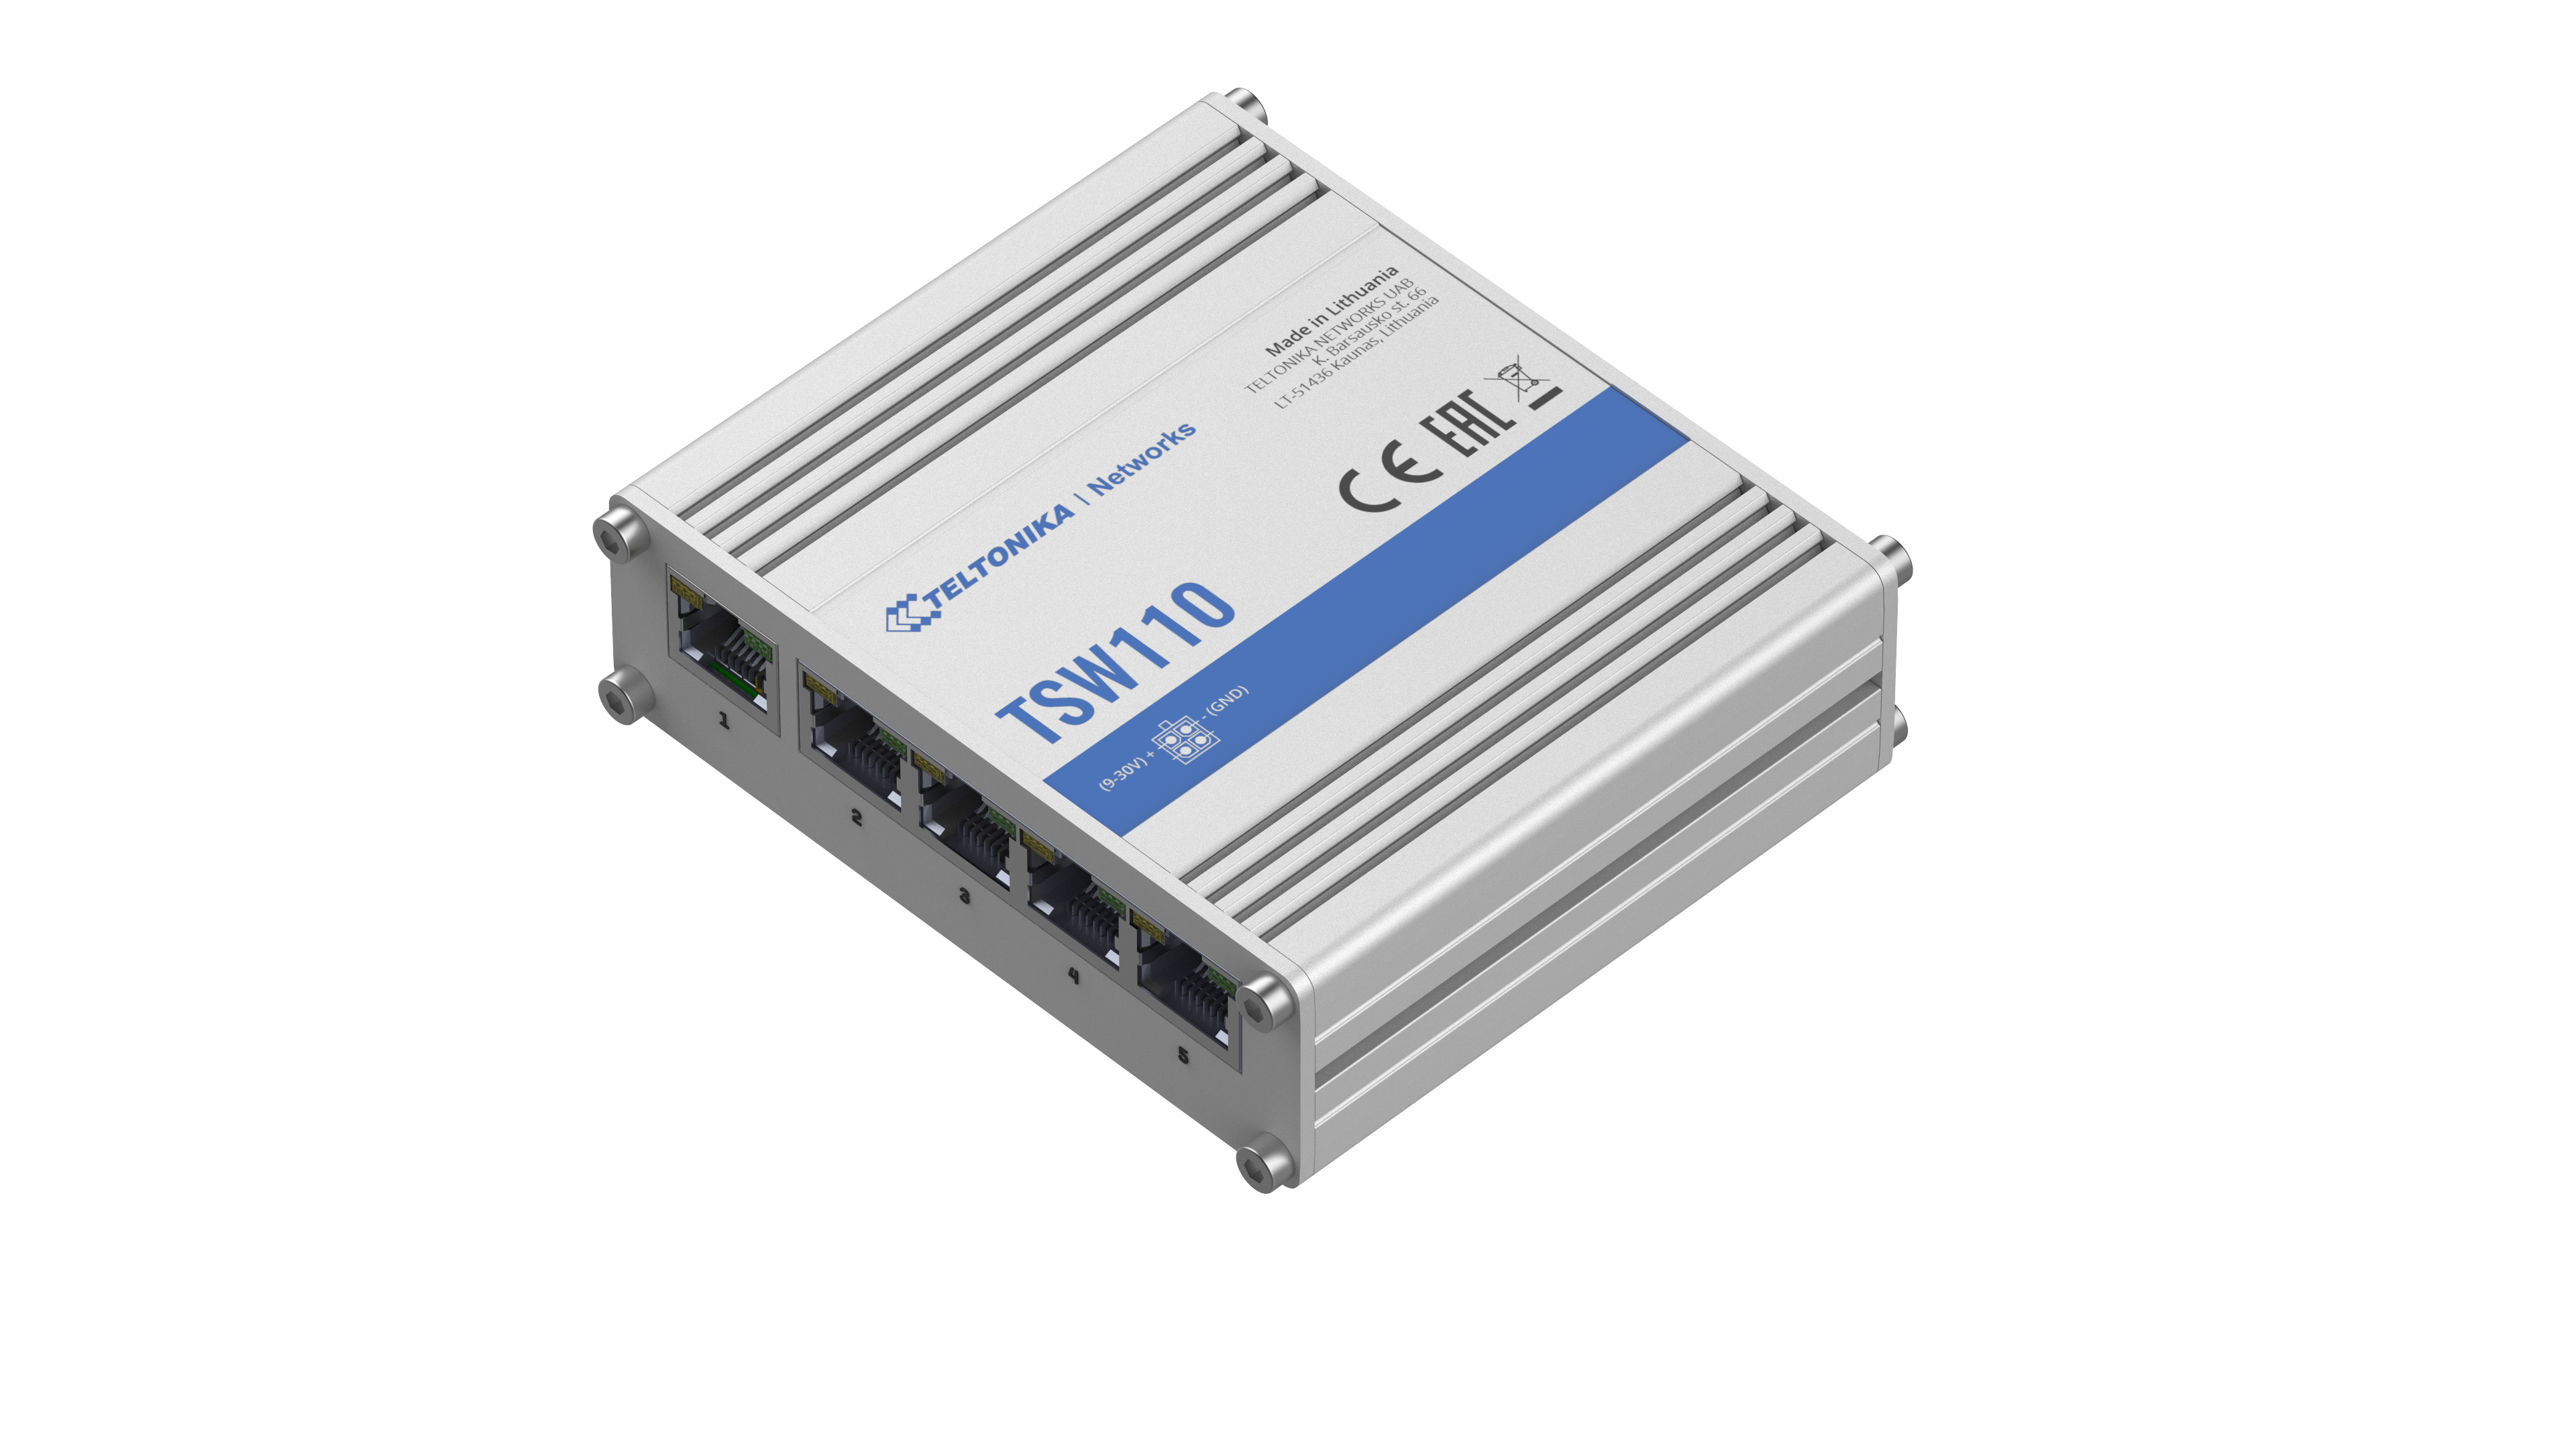 TSW110 - Teltonika Switches. 5 x Gigabit Ethernet ports